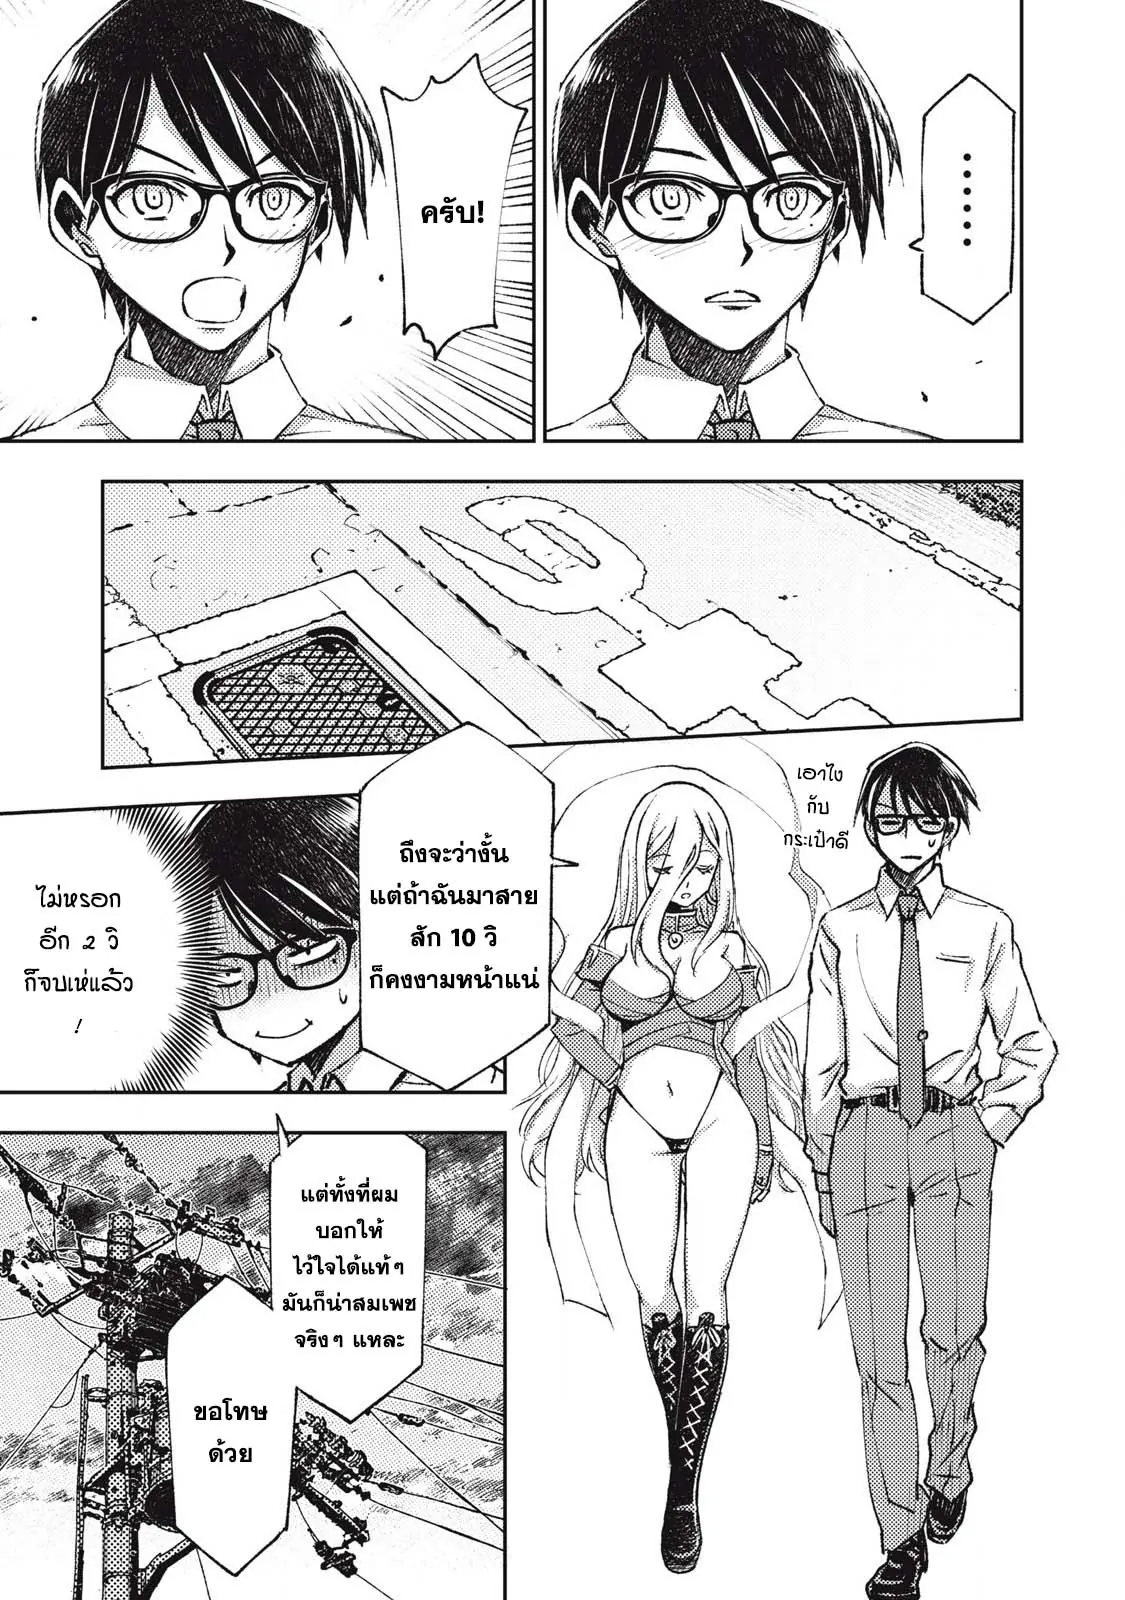 manga168